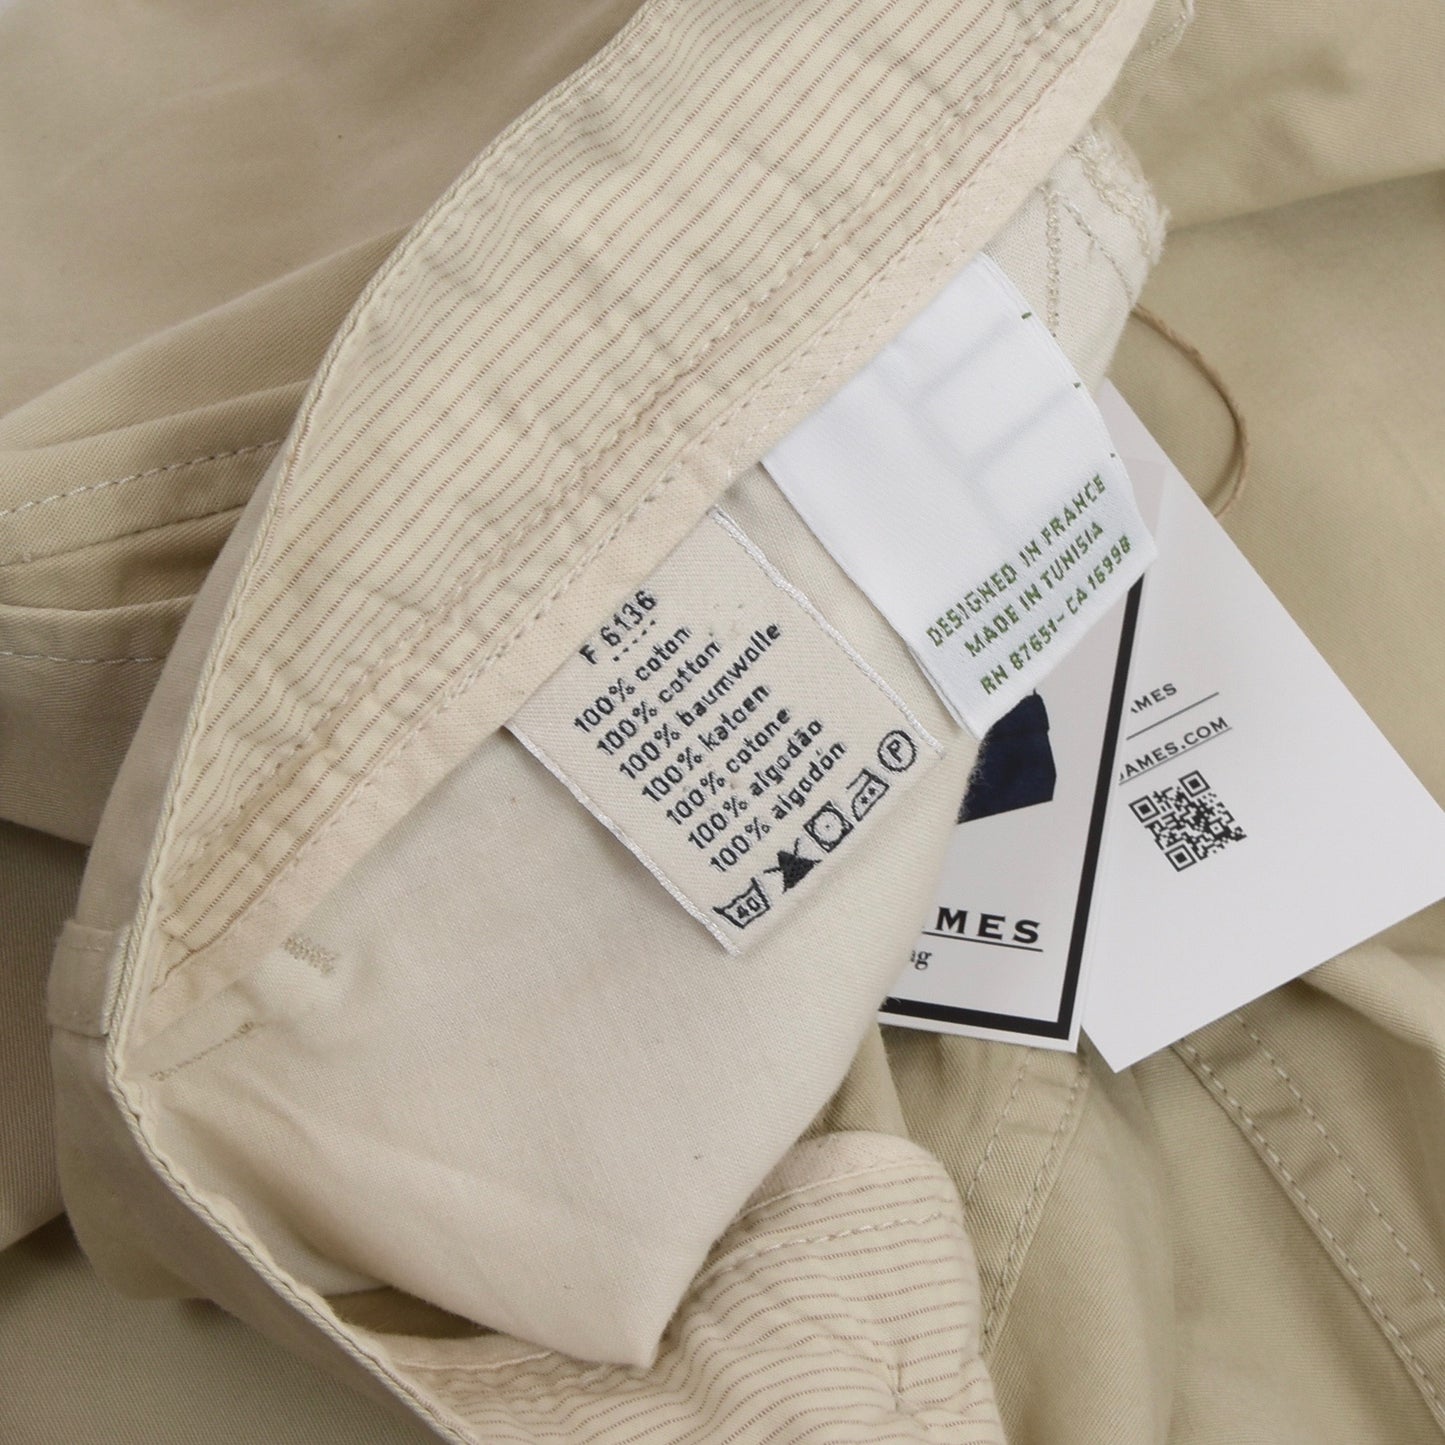 Lacoste Cotton Pants Size 56 - Beige/Khaki